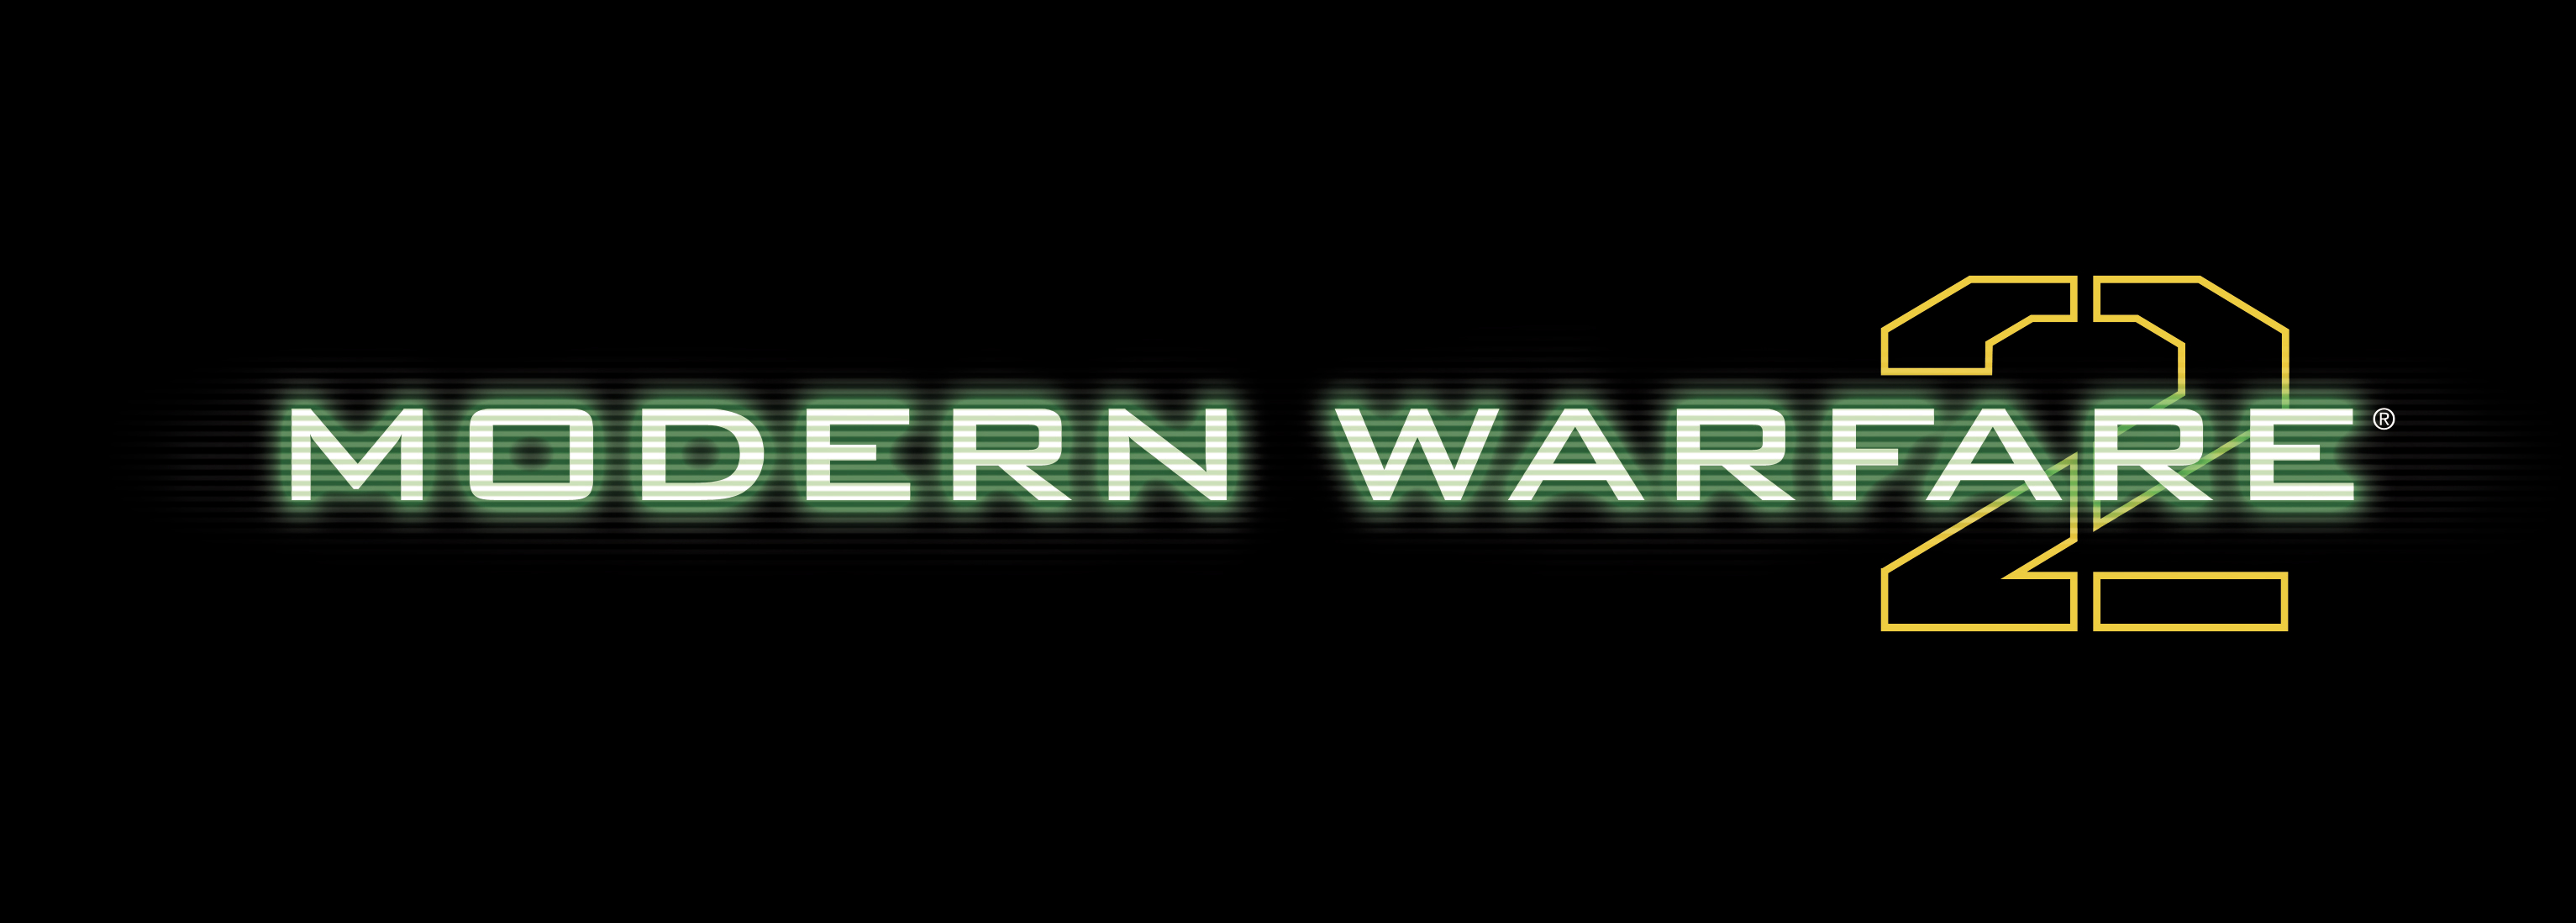 Modern_Warfare_2_Logo.jpg